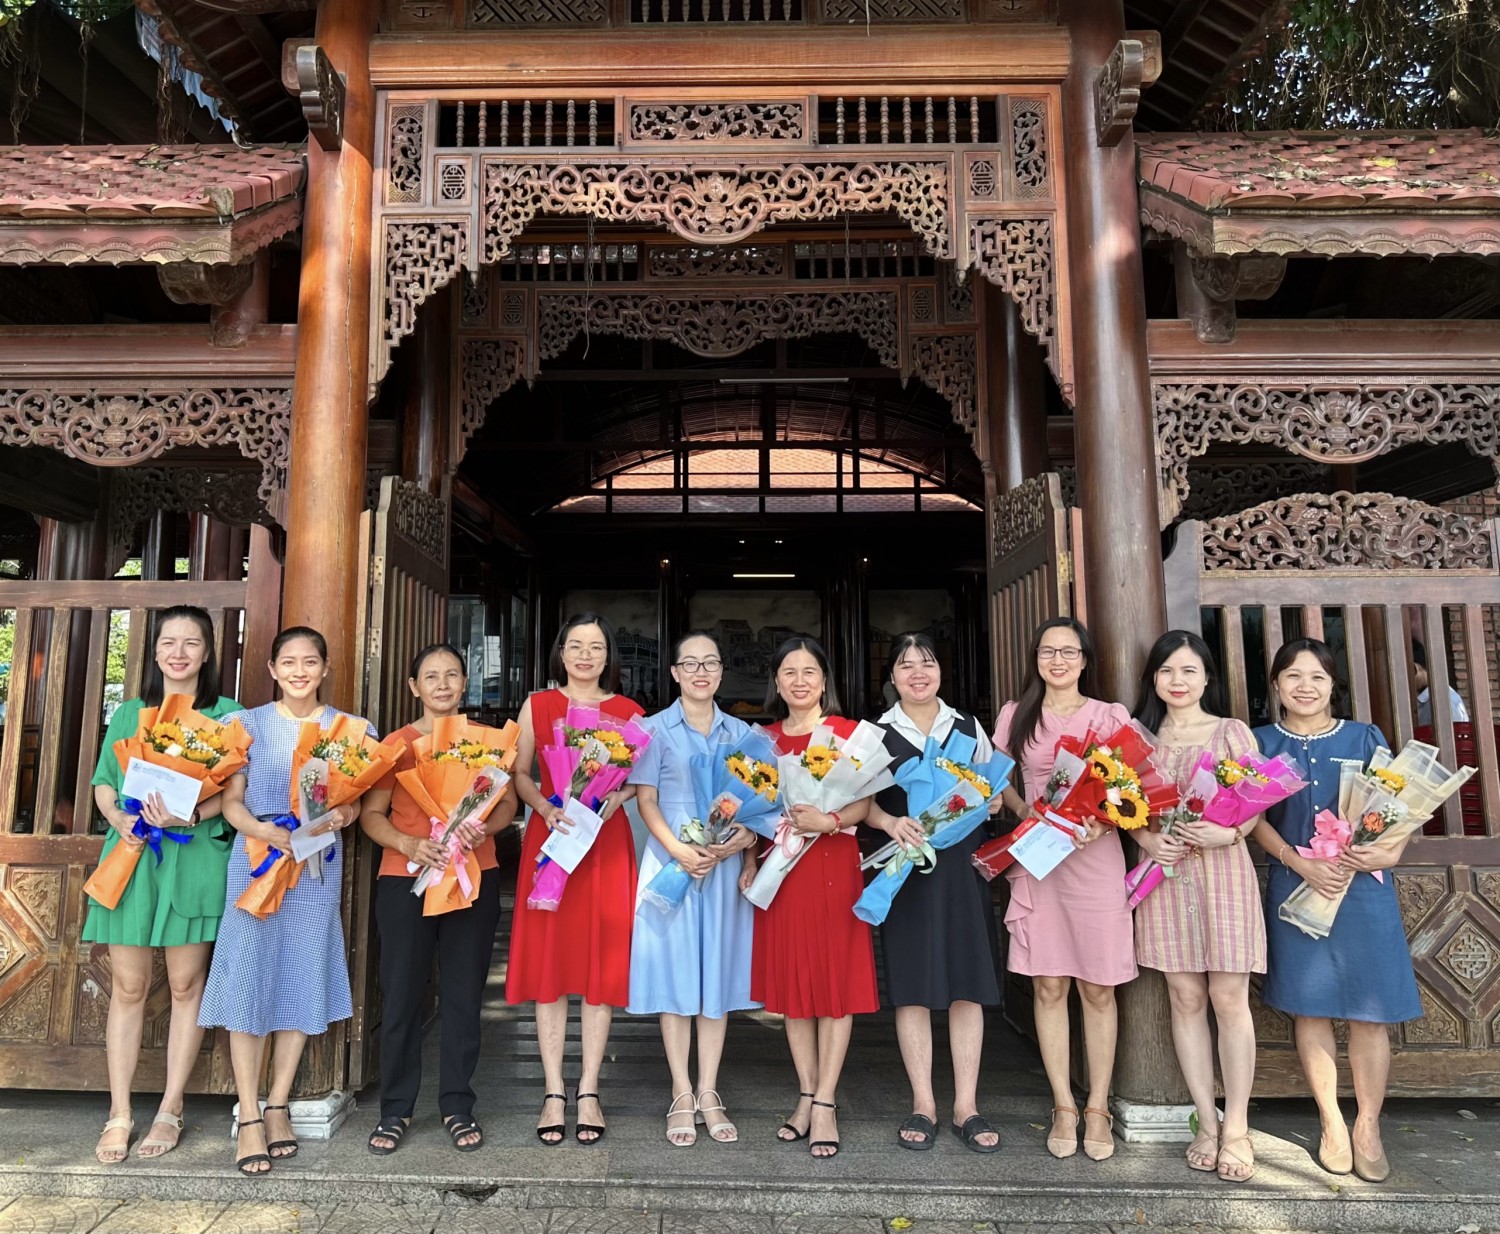 Lãnh đạo Trung tâm tặng hoa và phần thưởng chúc mừng nữ viên chức, người lao động nhân kỷ niệm 93 năm thành lập Hội Liên hiệp Phụ nữ Việt Nam (20/10/1930 - 20/10/2023)